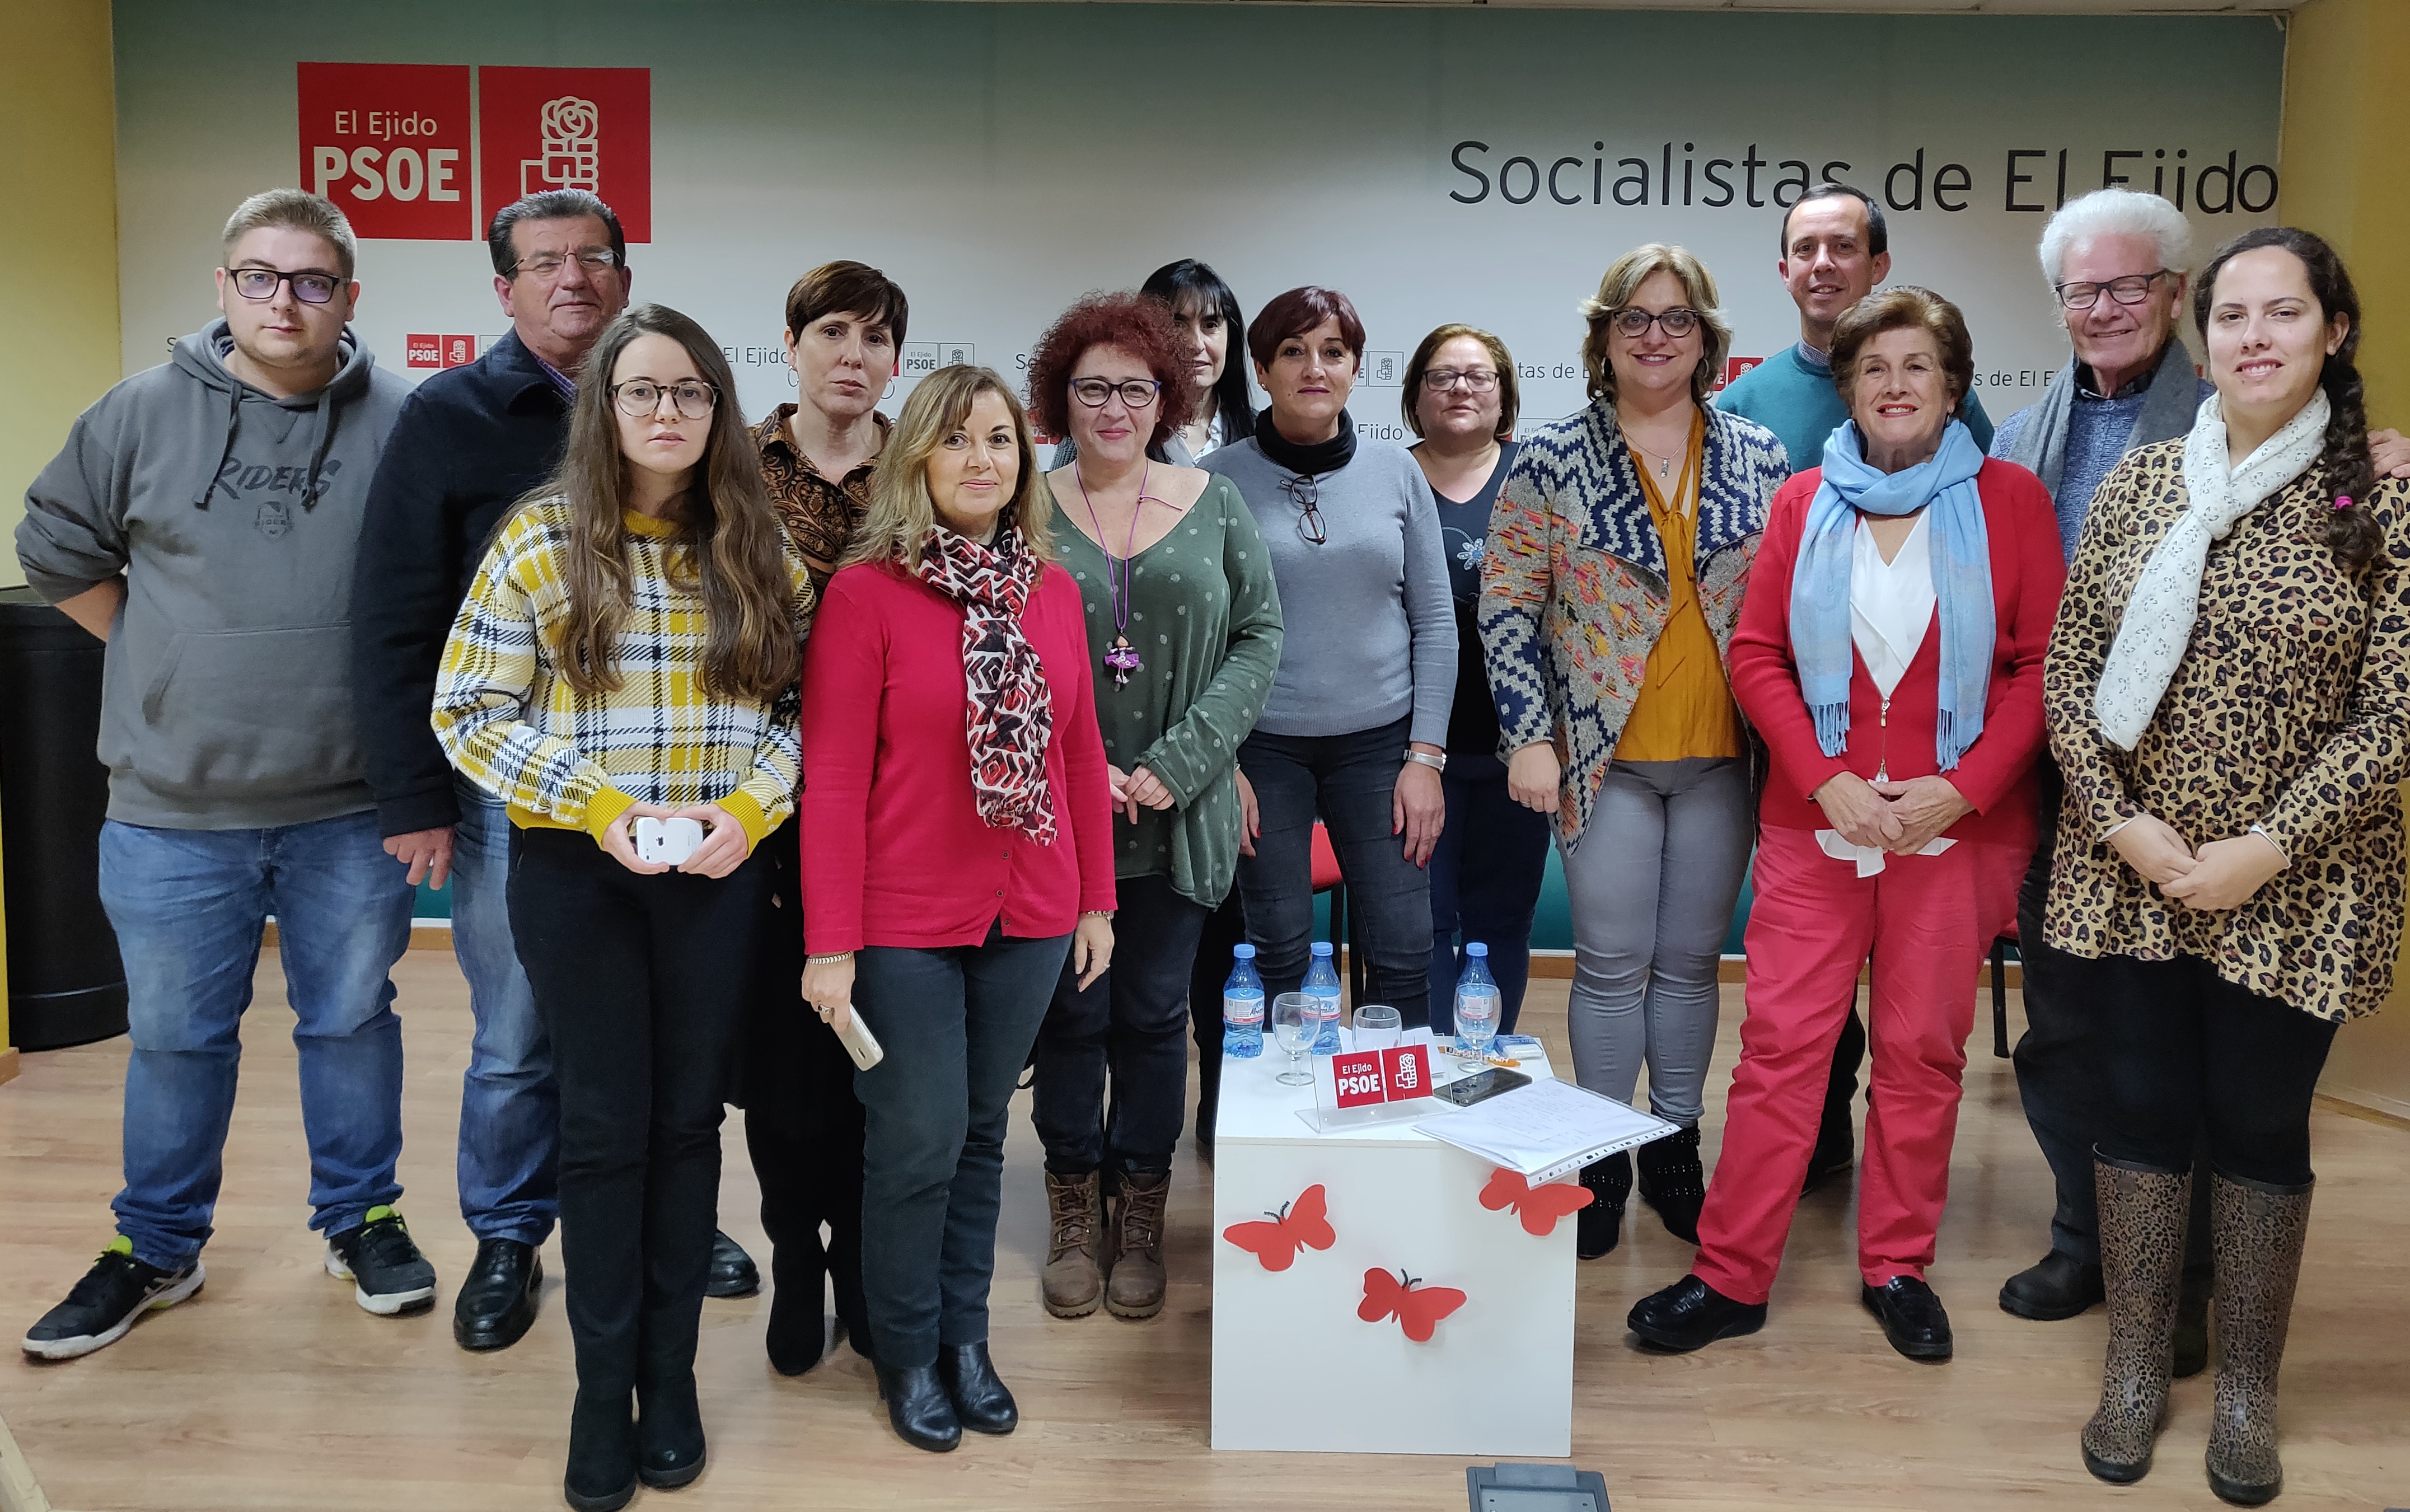 PSOE El Ejido coloquio 'Las Políticas contra la Violencia hacia las Mujeres'